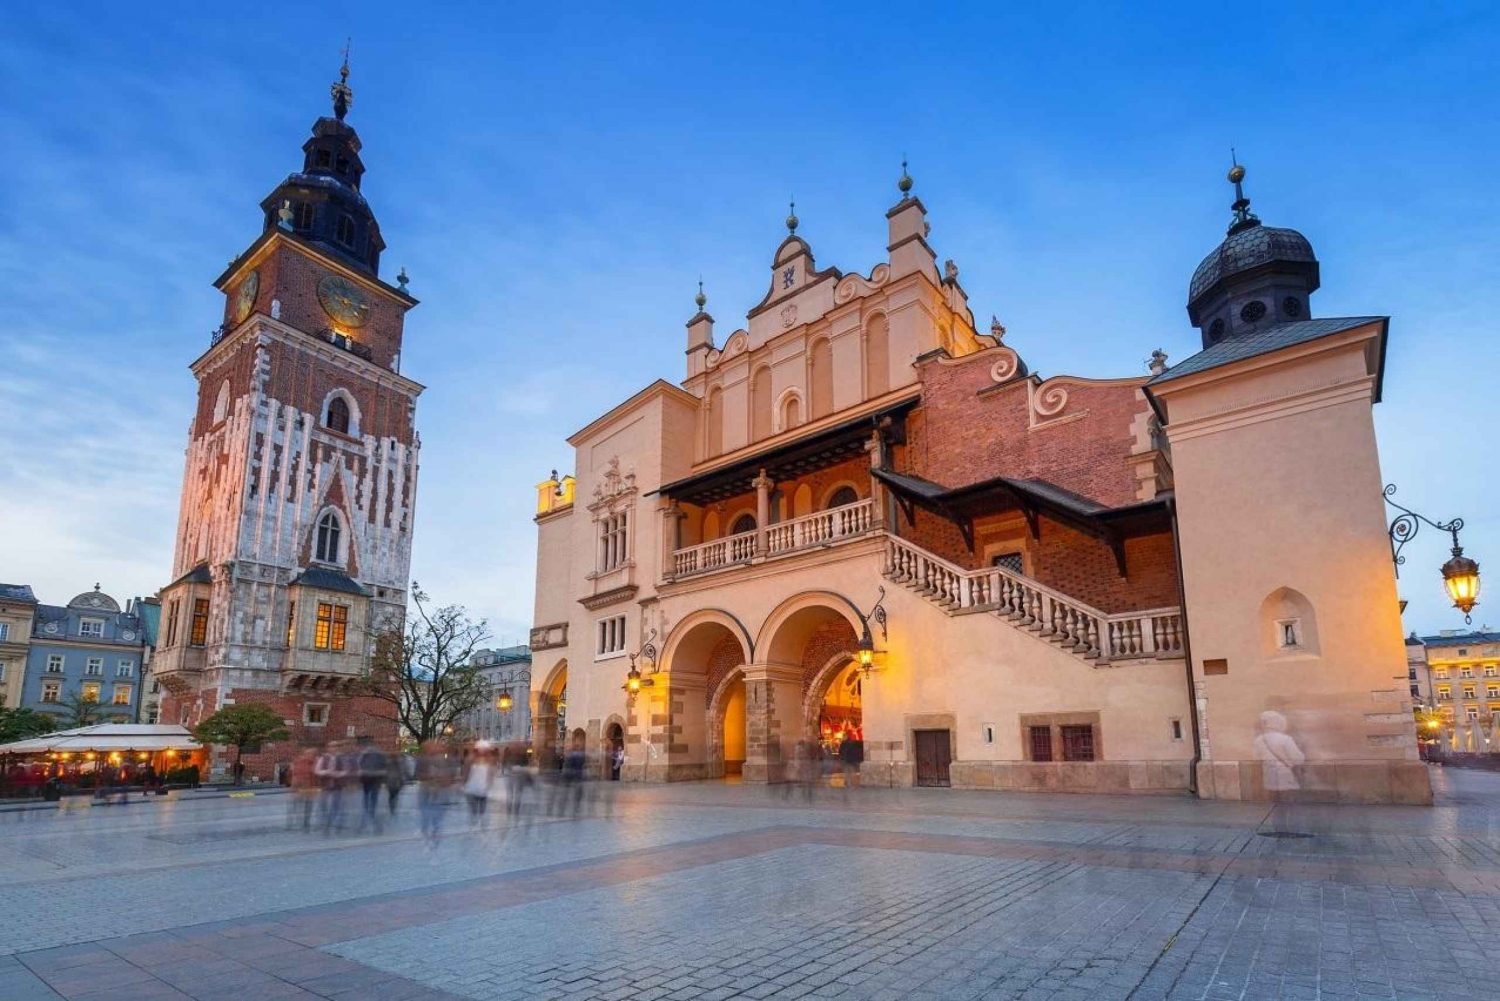 Krakovan katedraali, kaupungin basilika ja maanalaisen museon kierros